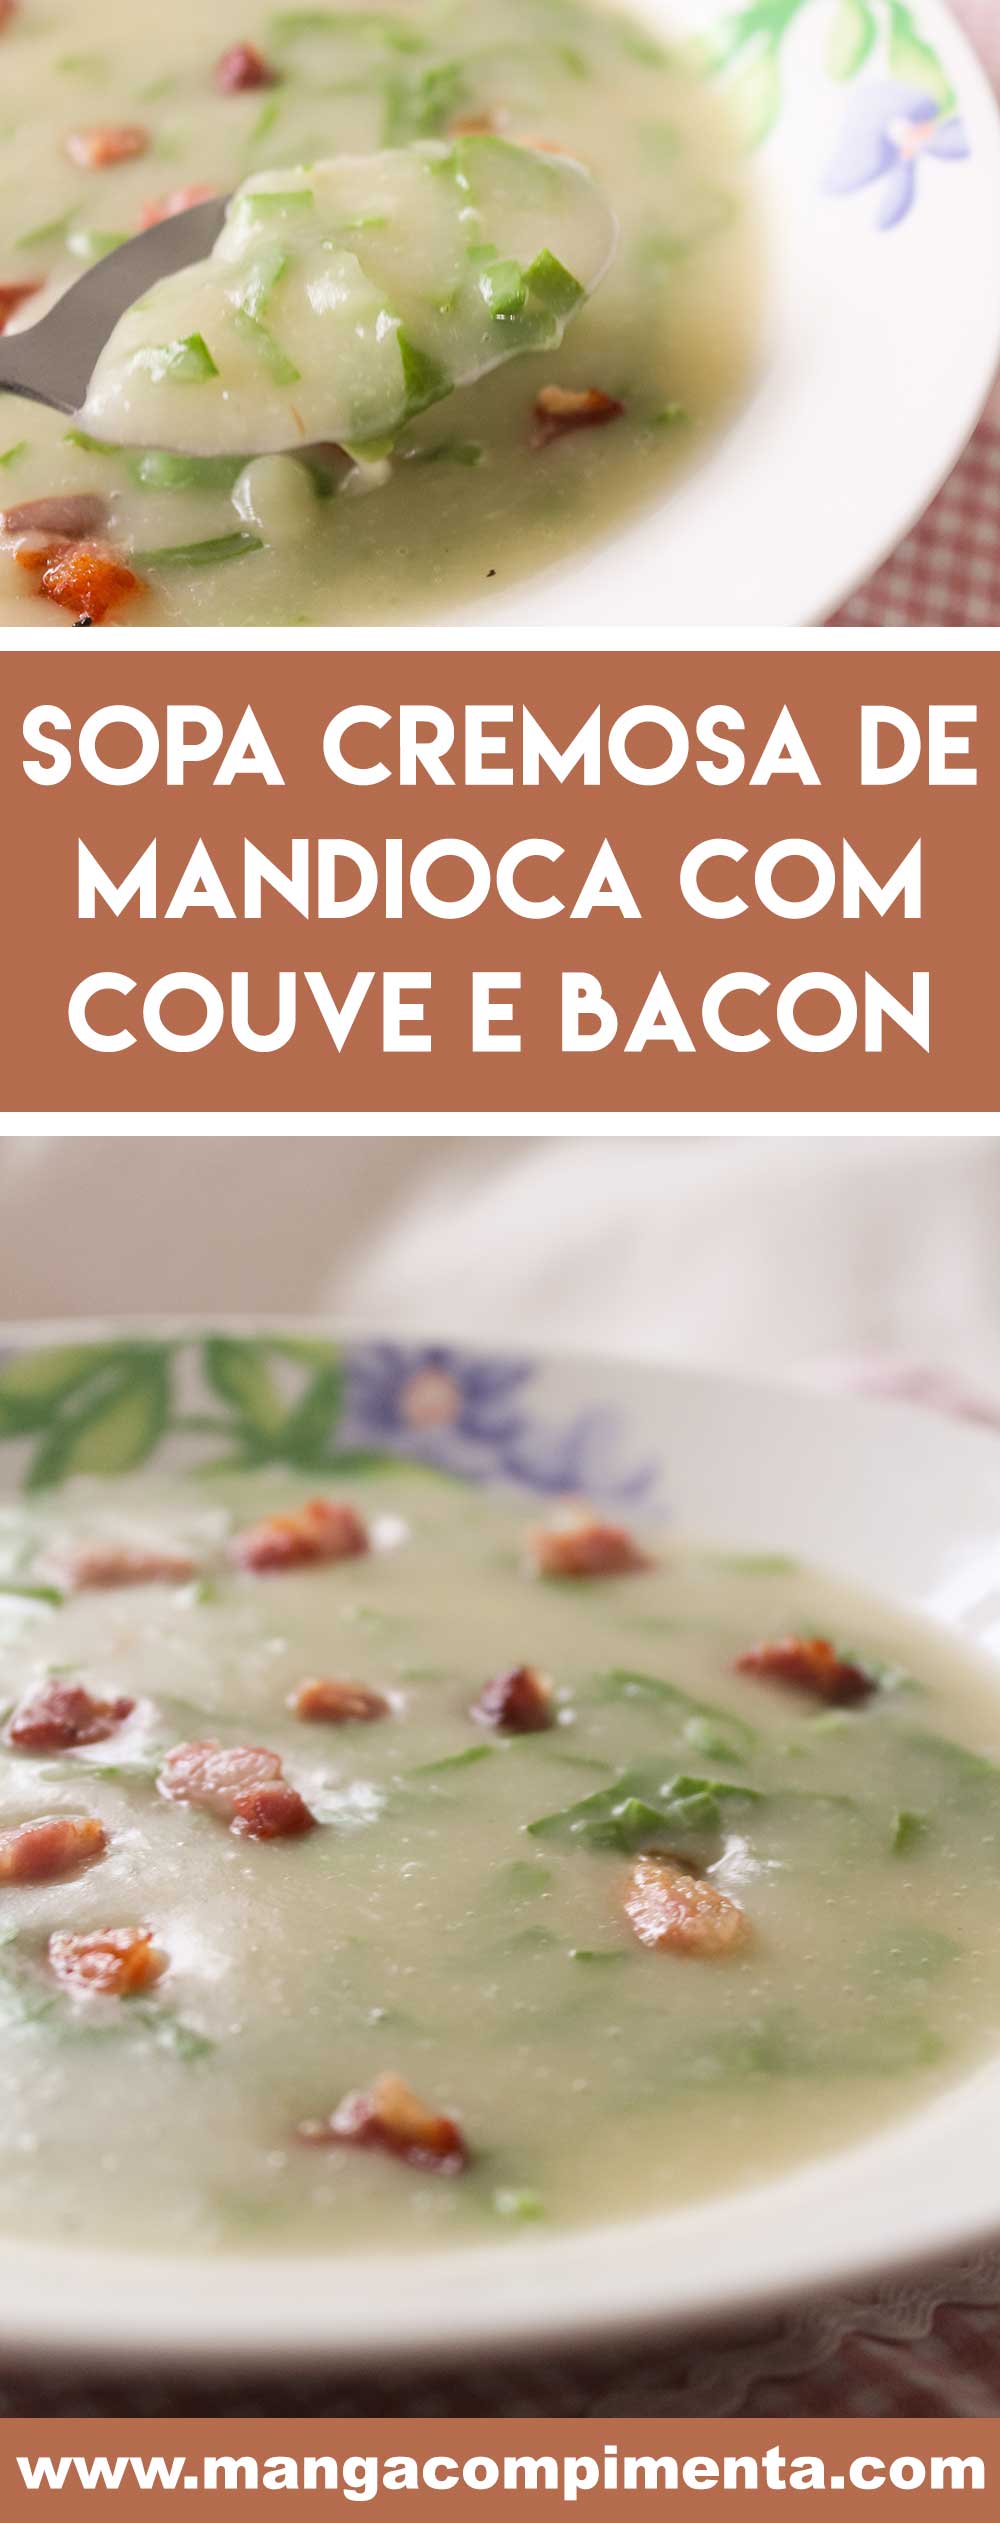 Receita de Sopa Cremosa de Mandioca com Couve e Bacon - um prato quentinho para os dias frios!